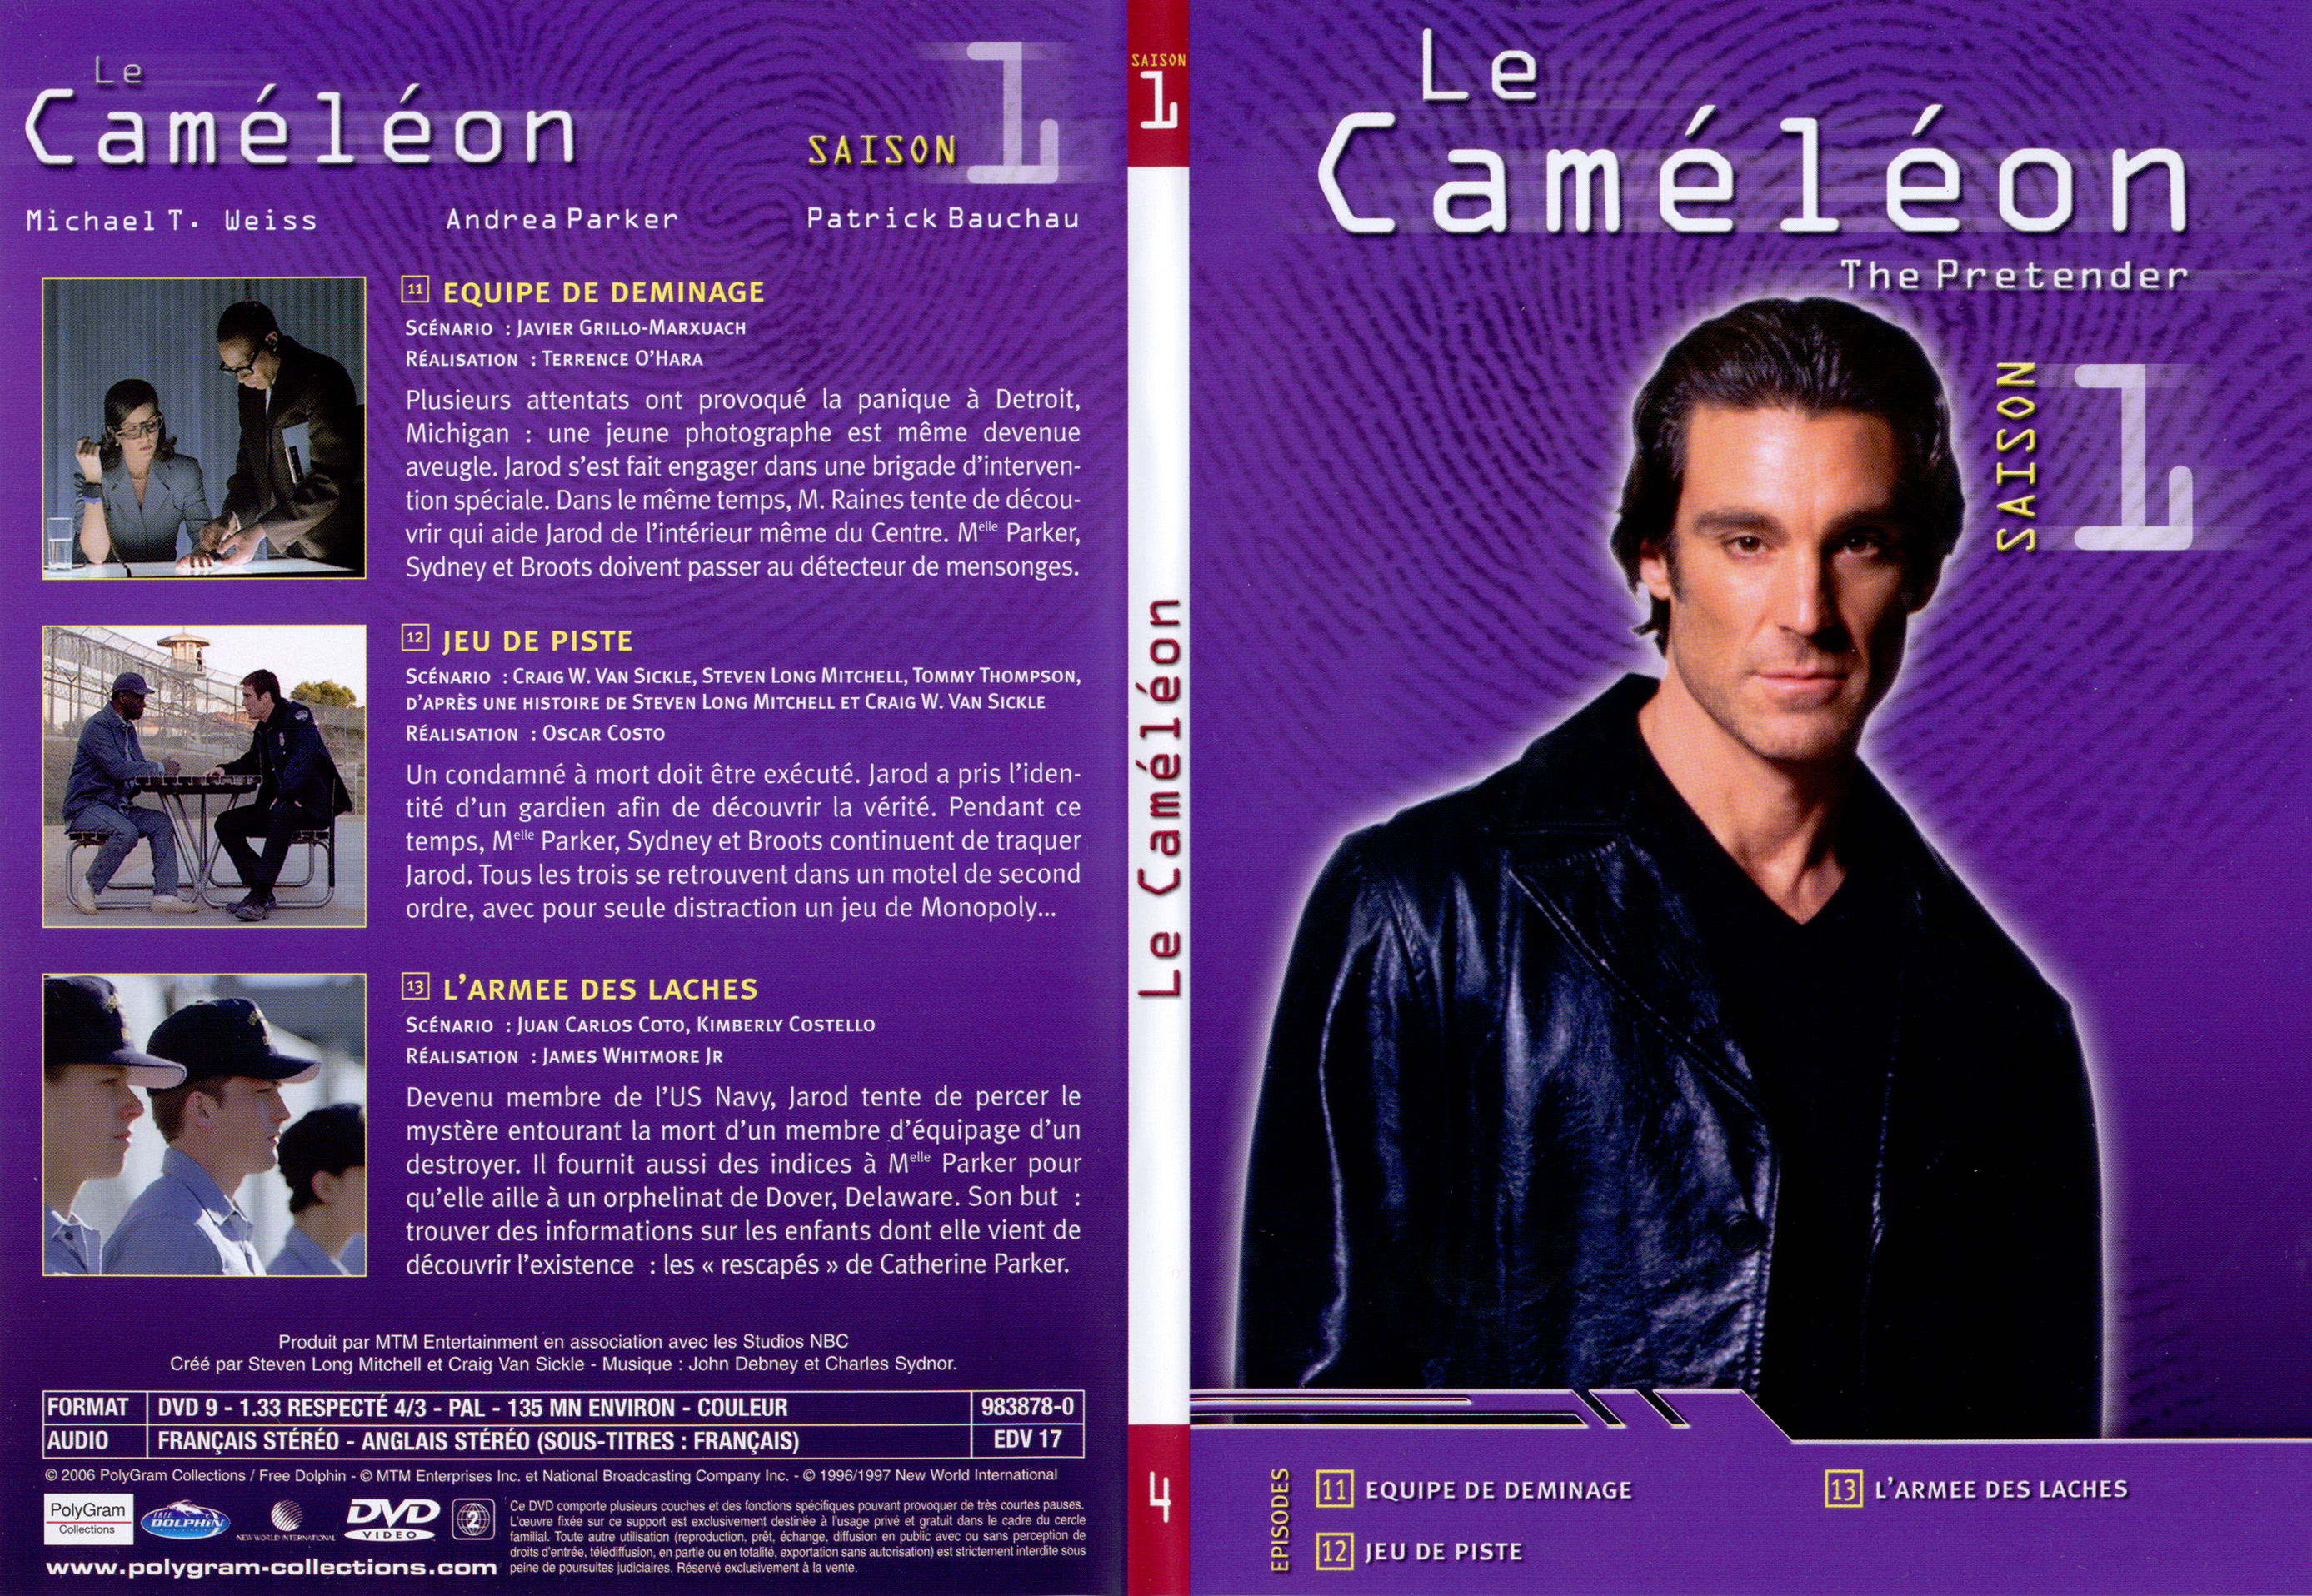 Jaquette DVD Le camlon saison 1 pisodes 11-13 - SLIM